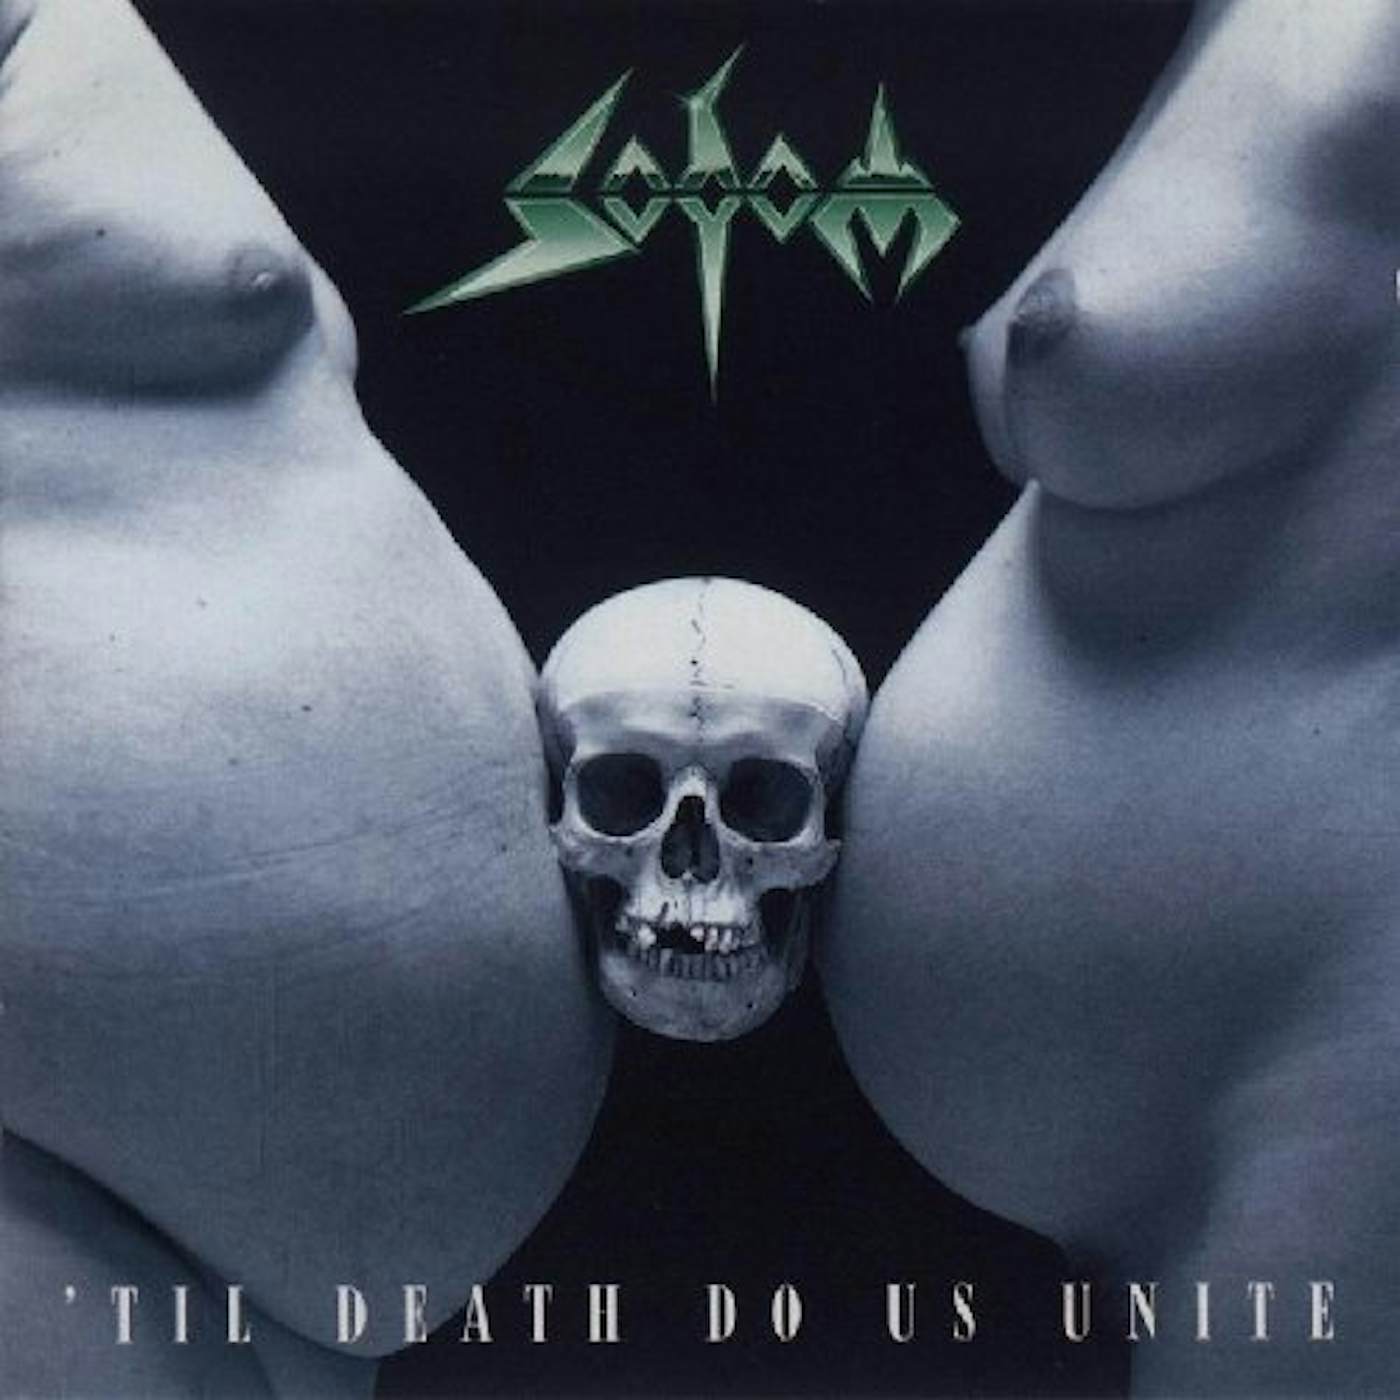 Sodom TILL DEATH DO US UNITE Vinyl Record